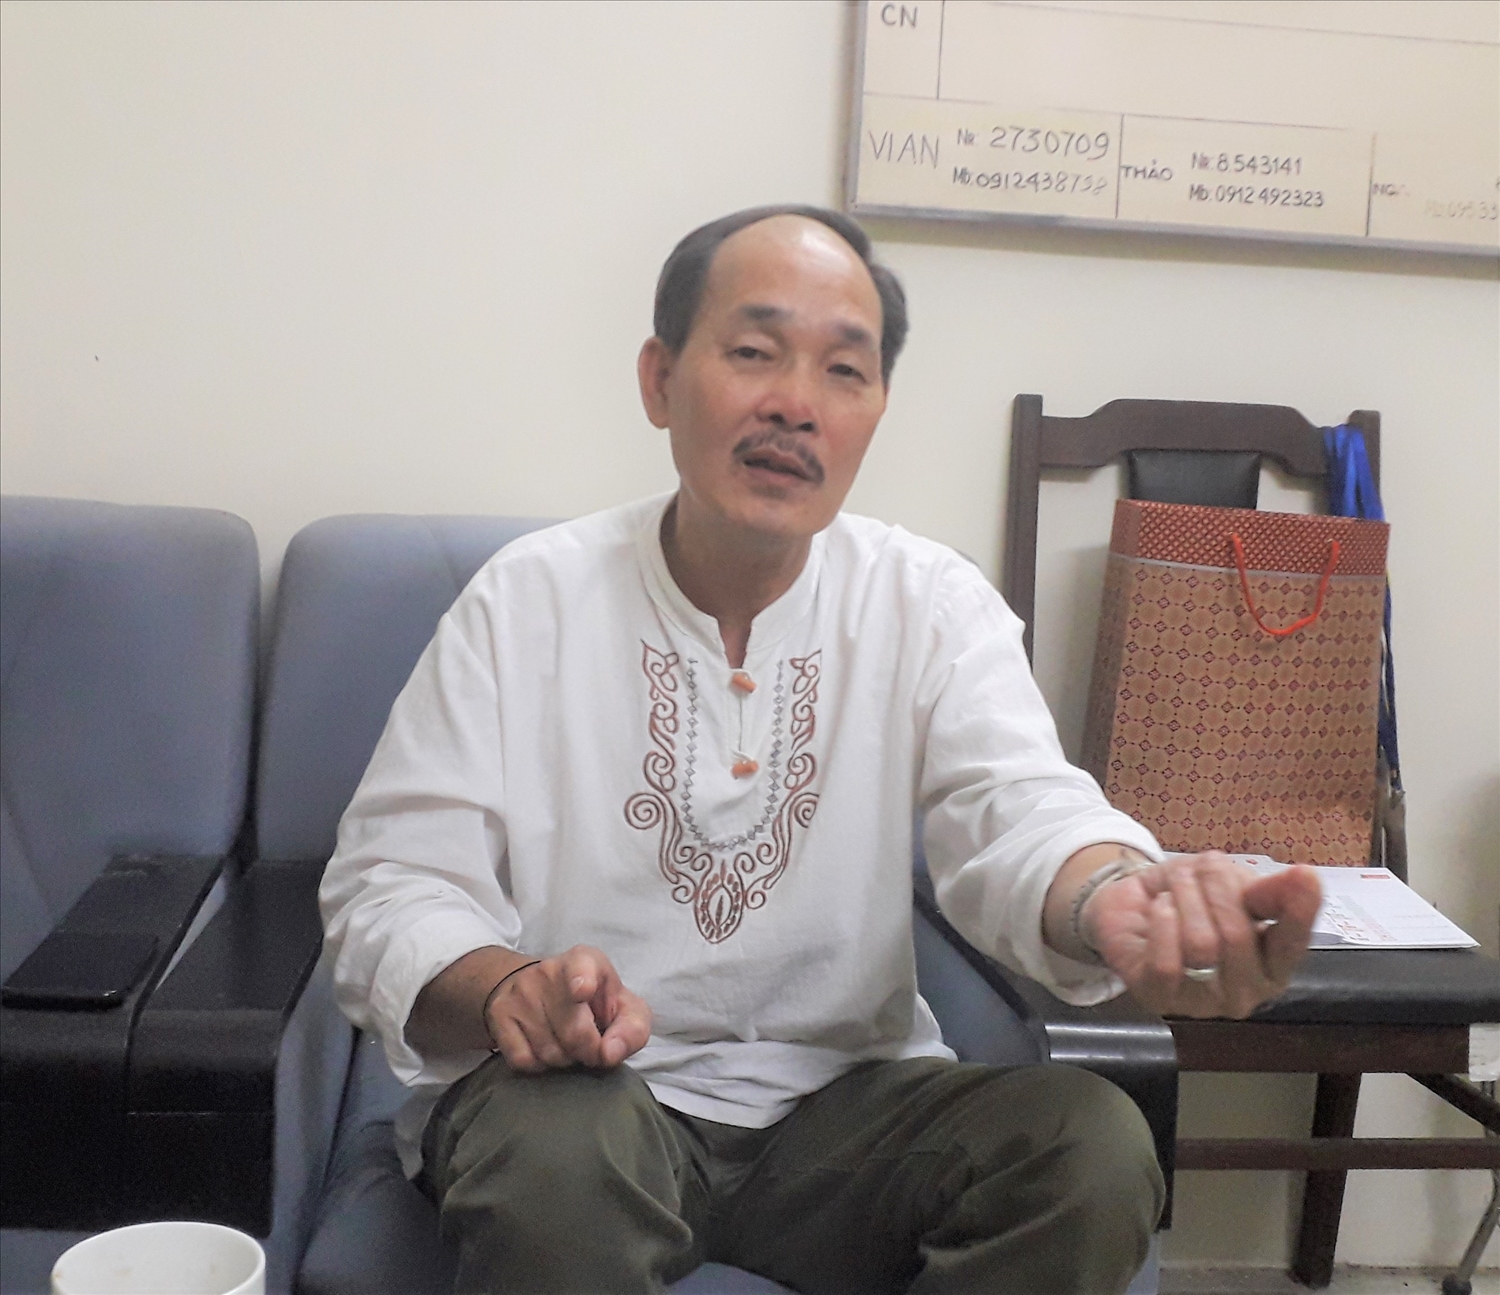 Tiến sỹ Vi Văn An là người Thái quê gốc huyện Con Cuông (Nghệ An), hiện công tác tại Bảo tàng Dân tộc học Việt Nam. Ông được biết đến là một chuyên gia hàng đầu nghiên cứu về dân tộc học hiện nay.